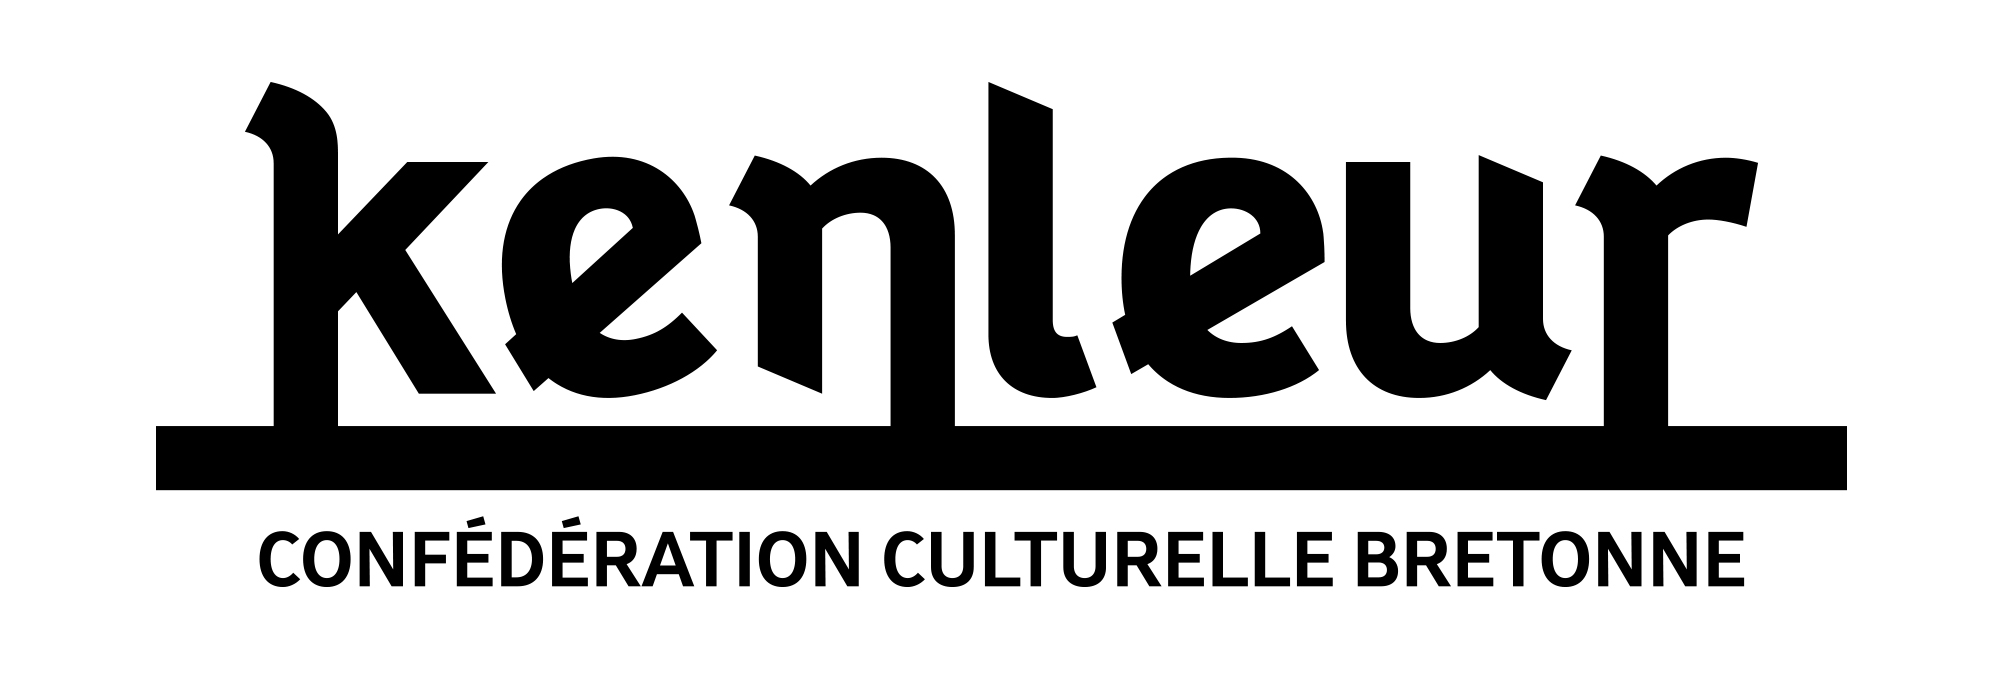 Confédération culturelle bretonne kenleur